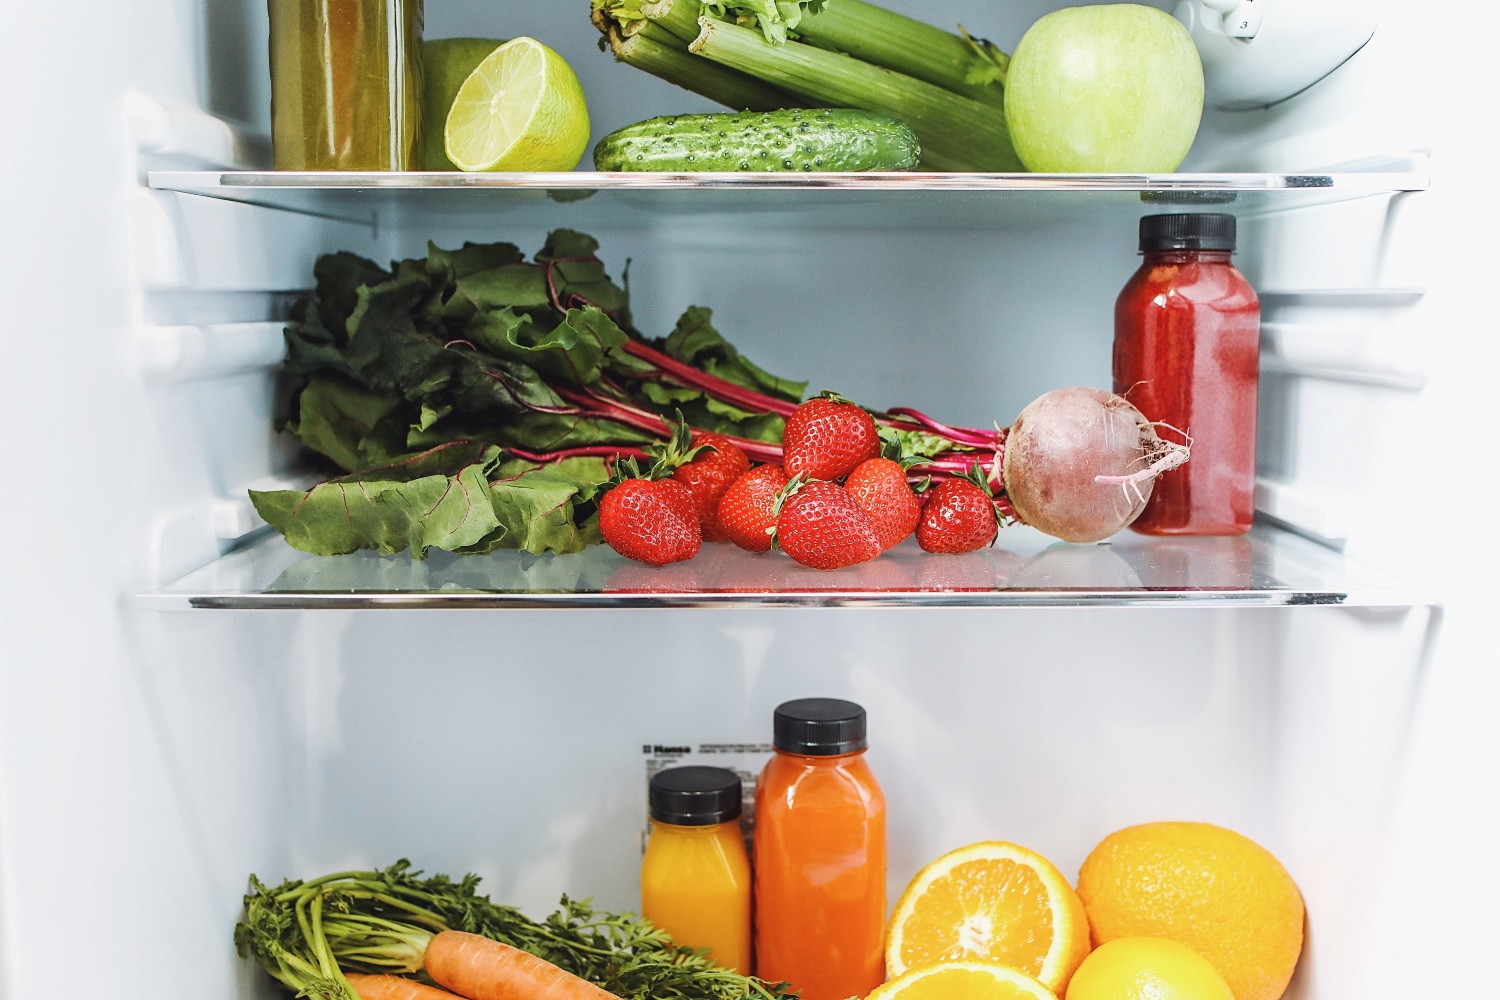 7 daržovės, kurių geriau nedėkite į šaldytuvą – ten jos suges greičiau